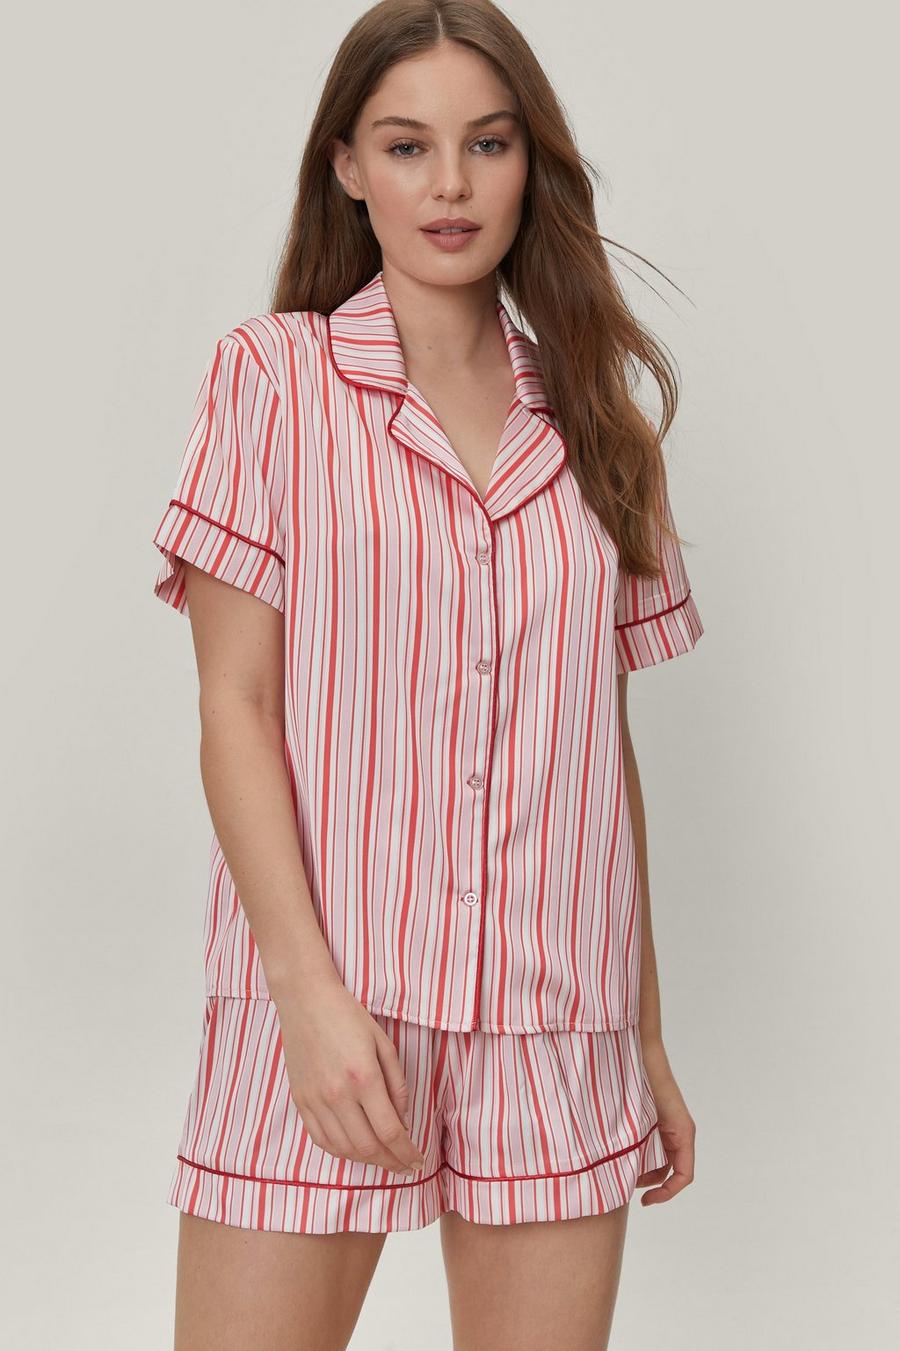 Satin Stripe Shirt and Short Pajama Set